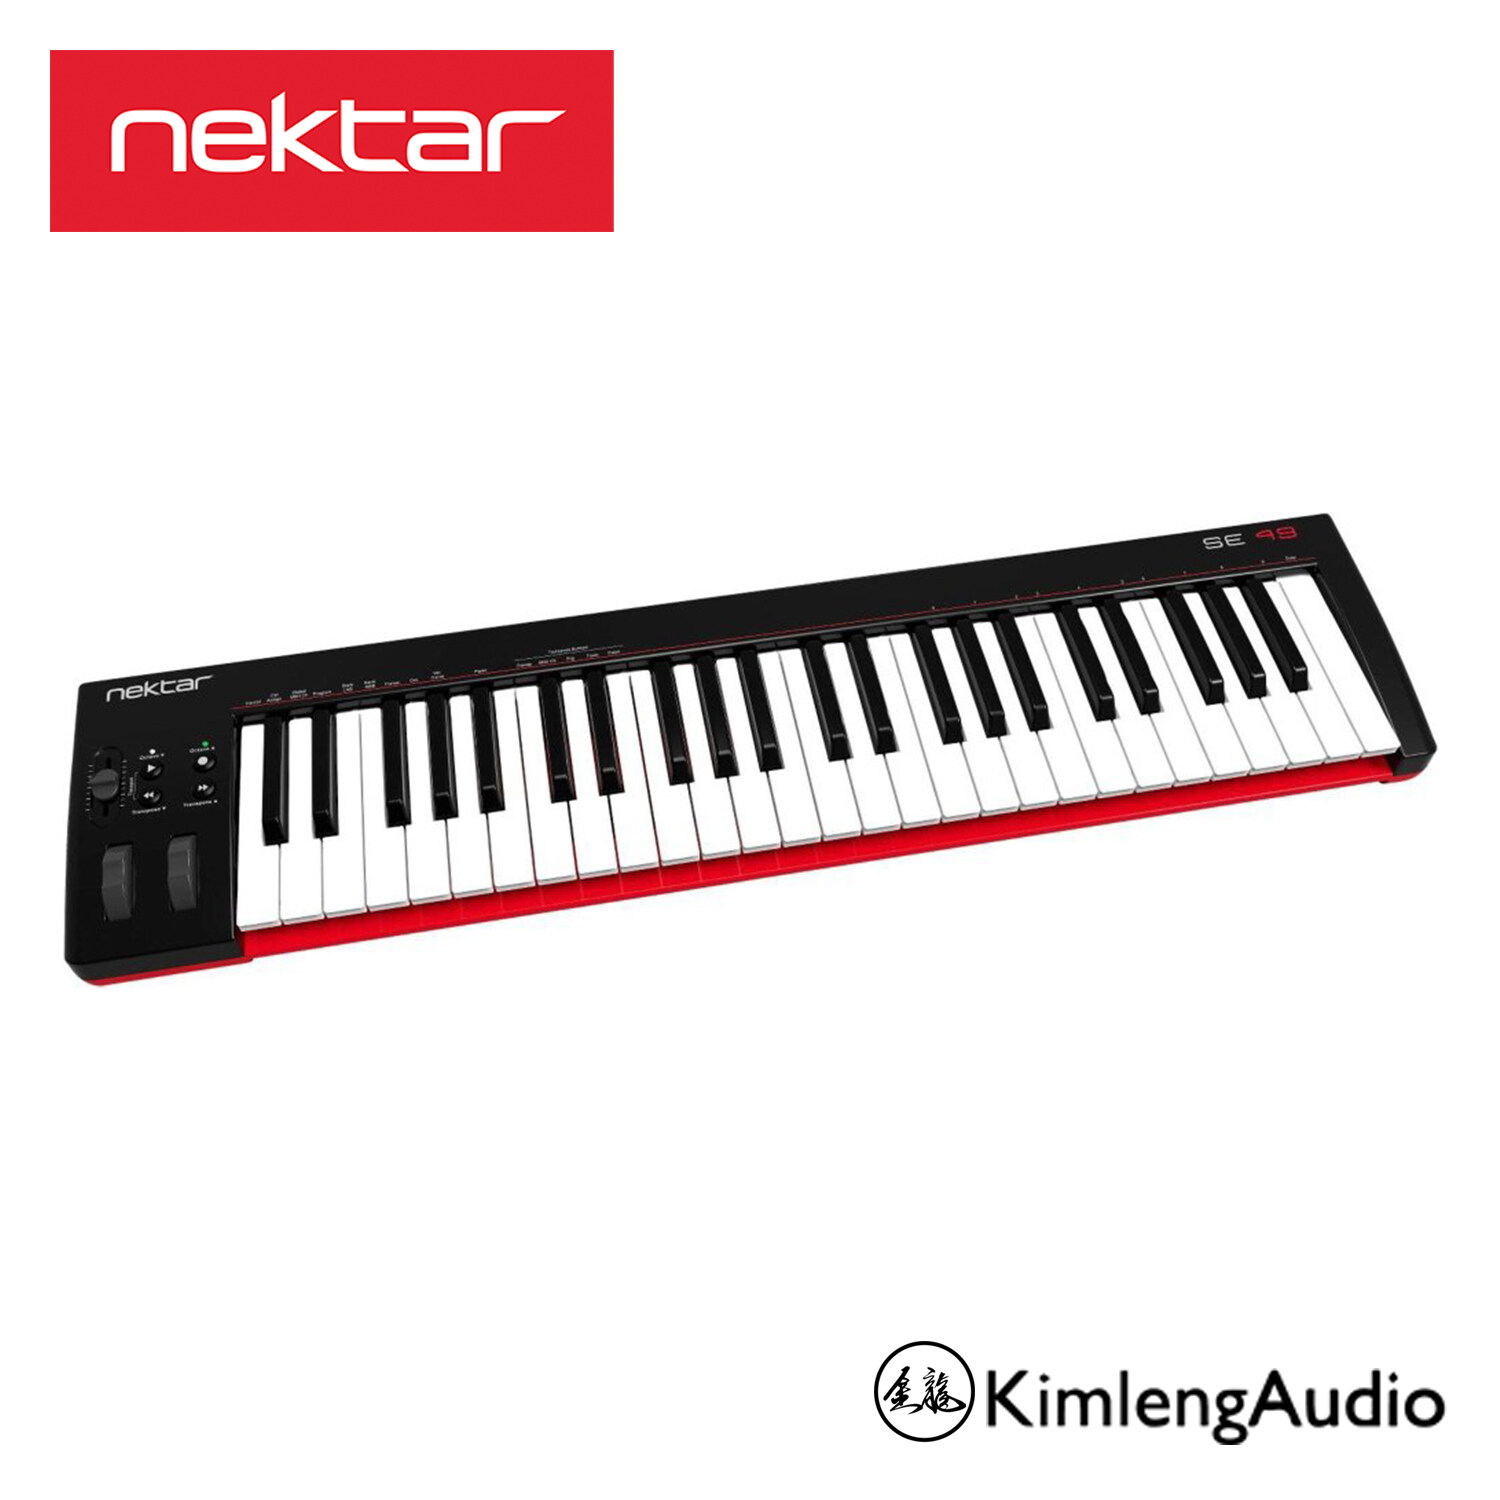 Nektar SE49 MIDI คอนโทรลเลอร์ยอดขายอันดับ 1 คุณภาพดีใช้งานง่าย